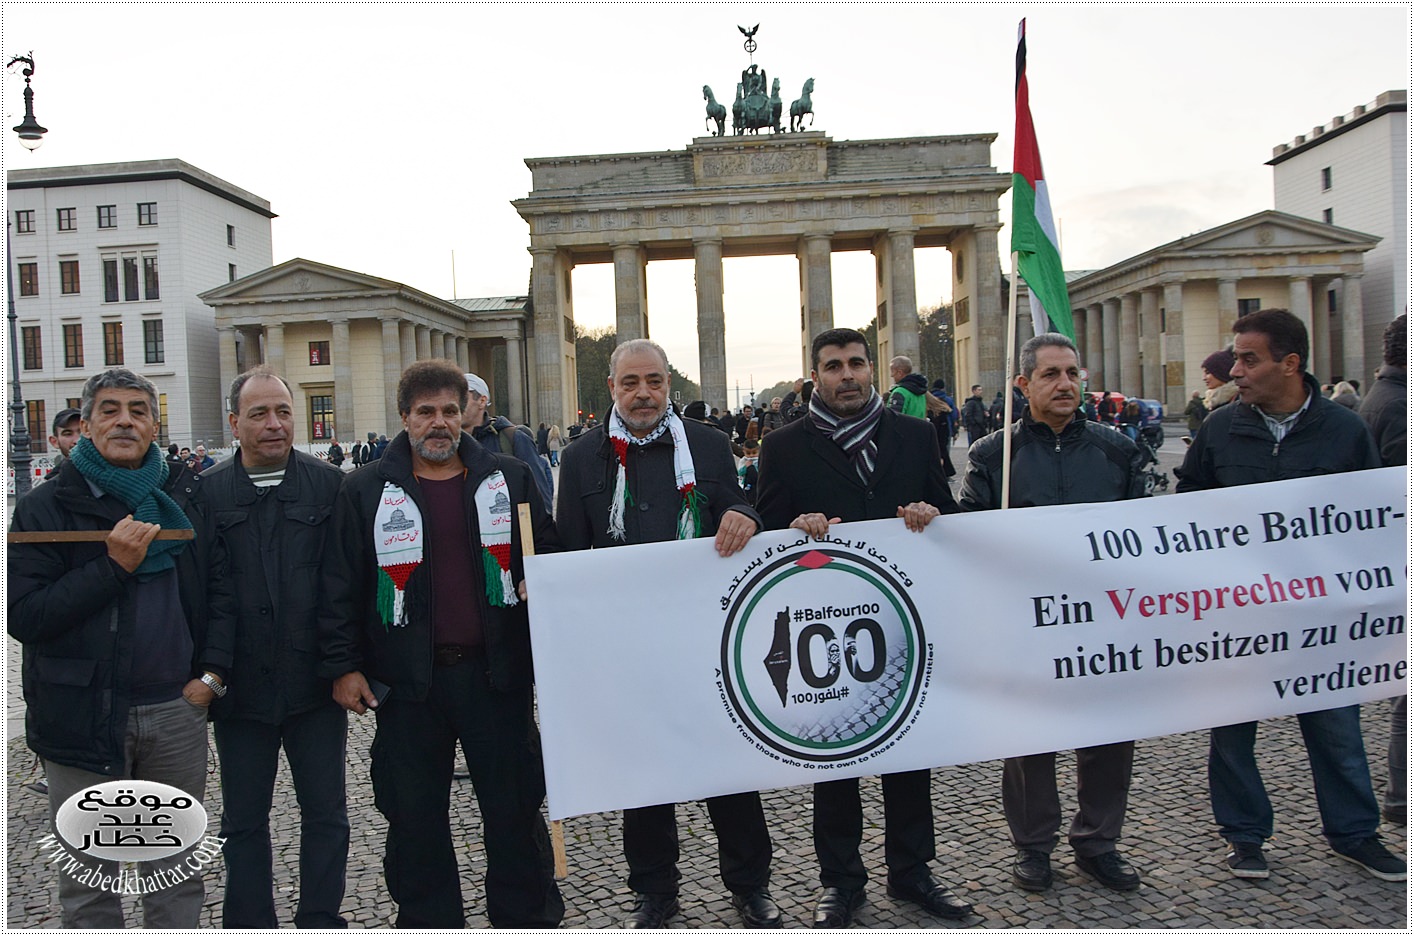 لجنة العمل الوطني الفلسطيني في برلين والذكرى المئوية لوعد بلفور